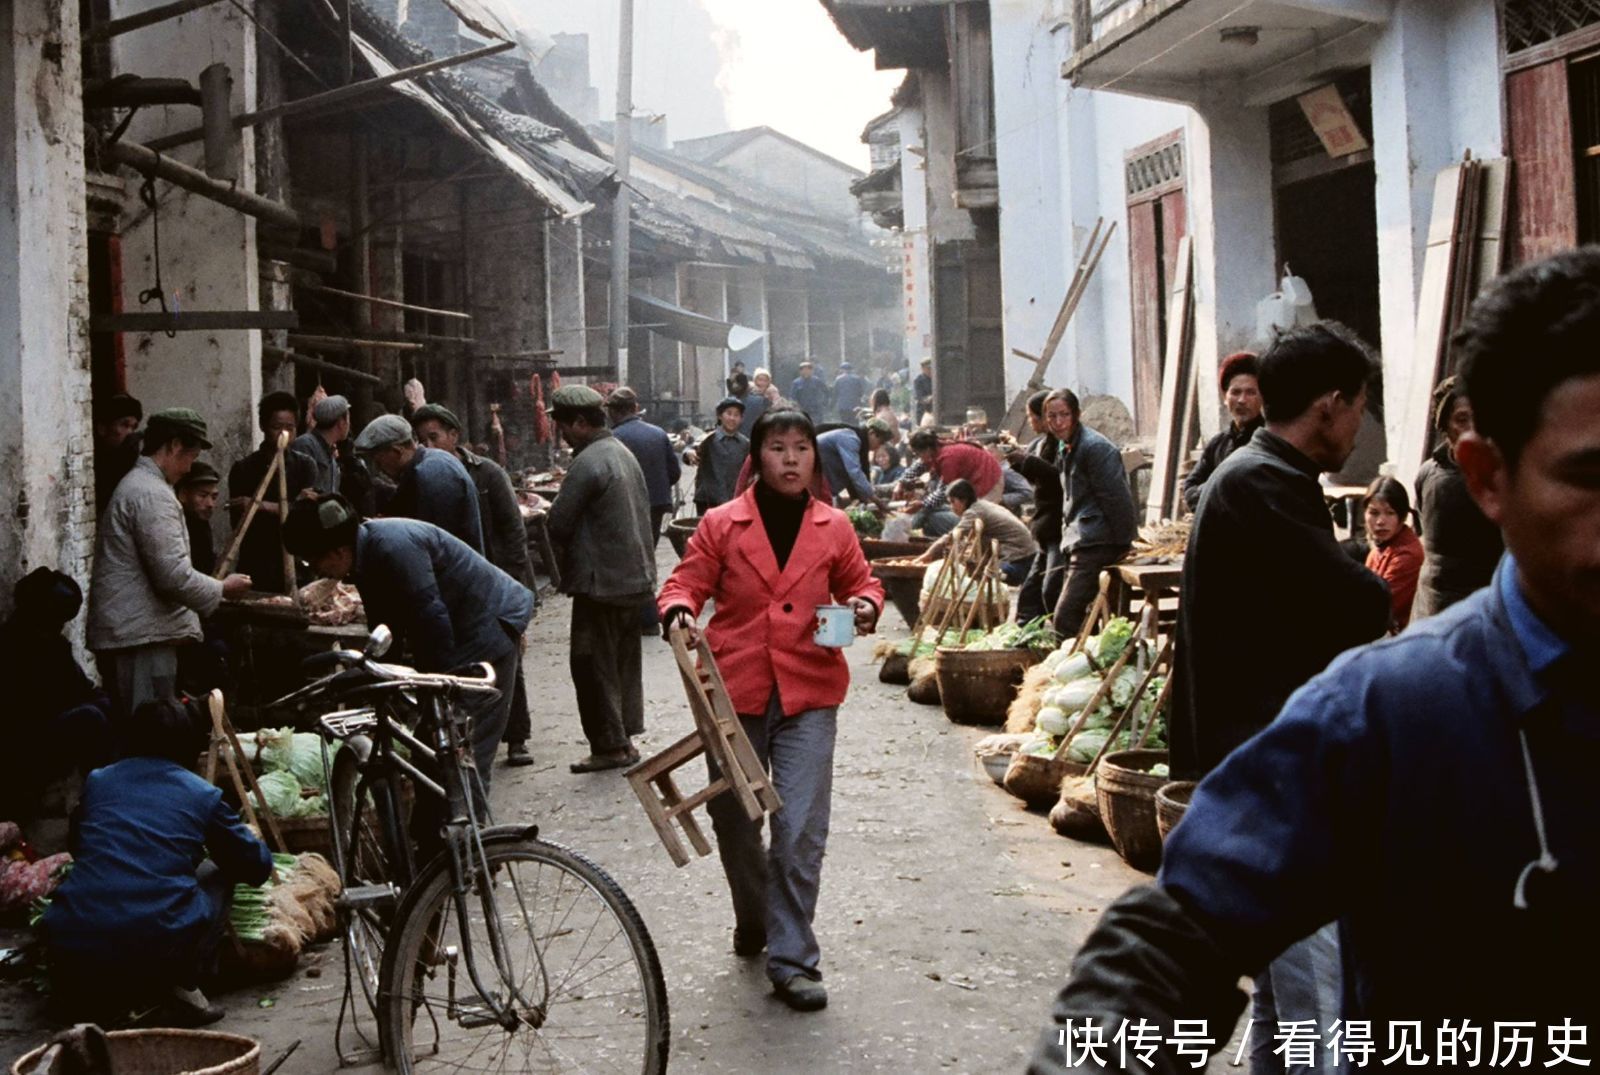 昆明|老照片 1985年的云南昆明 充满了人间烟火气